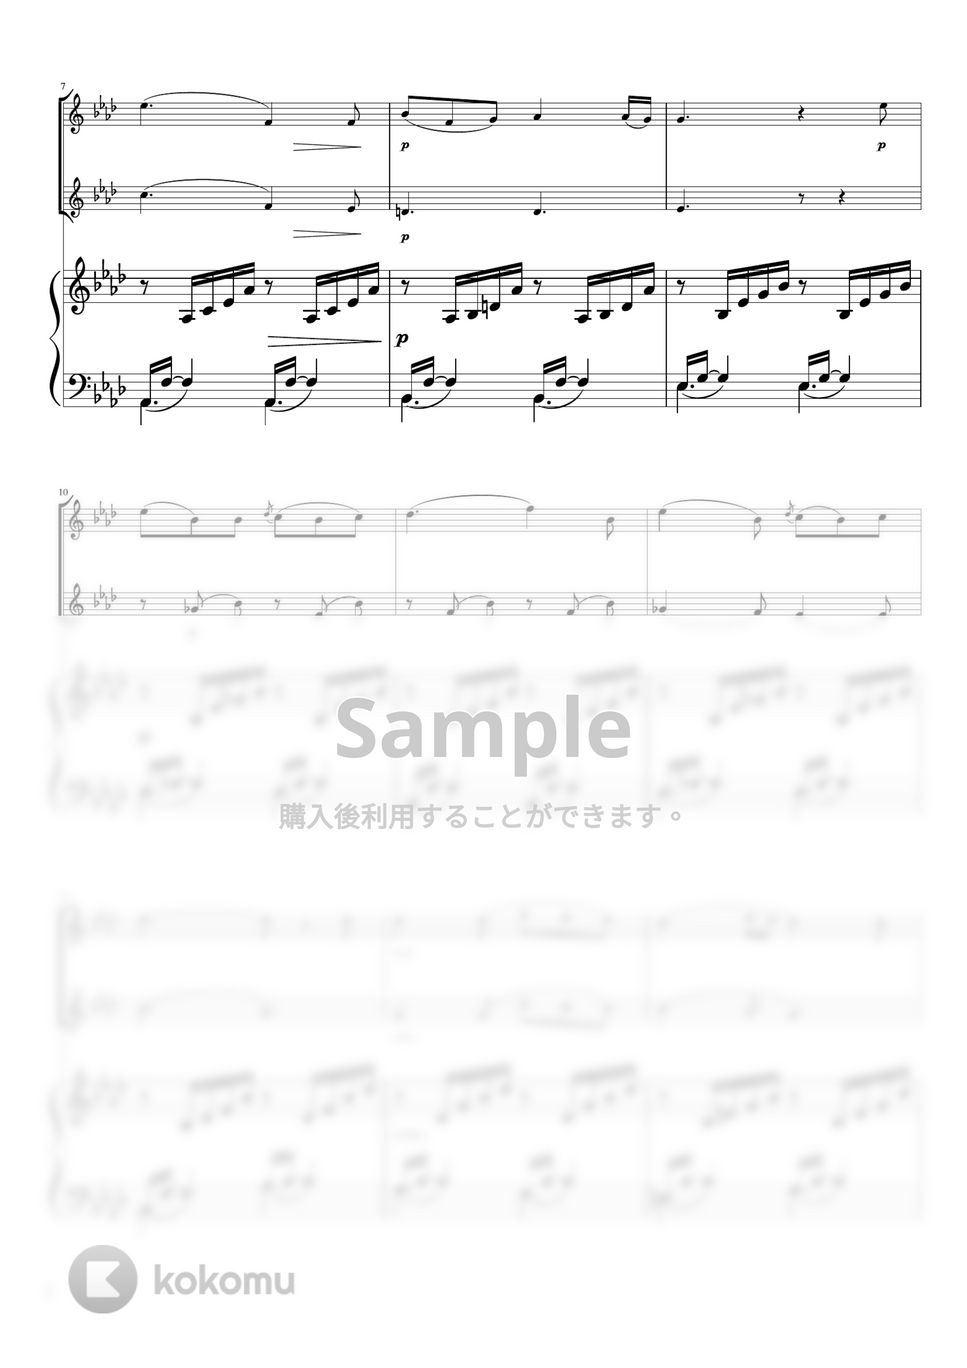 メンデルスゾーン - 歌の翼に (A♭・ピアノトリオ/Vn duo) by pfkaori